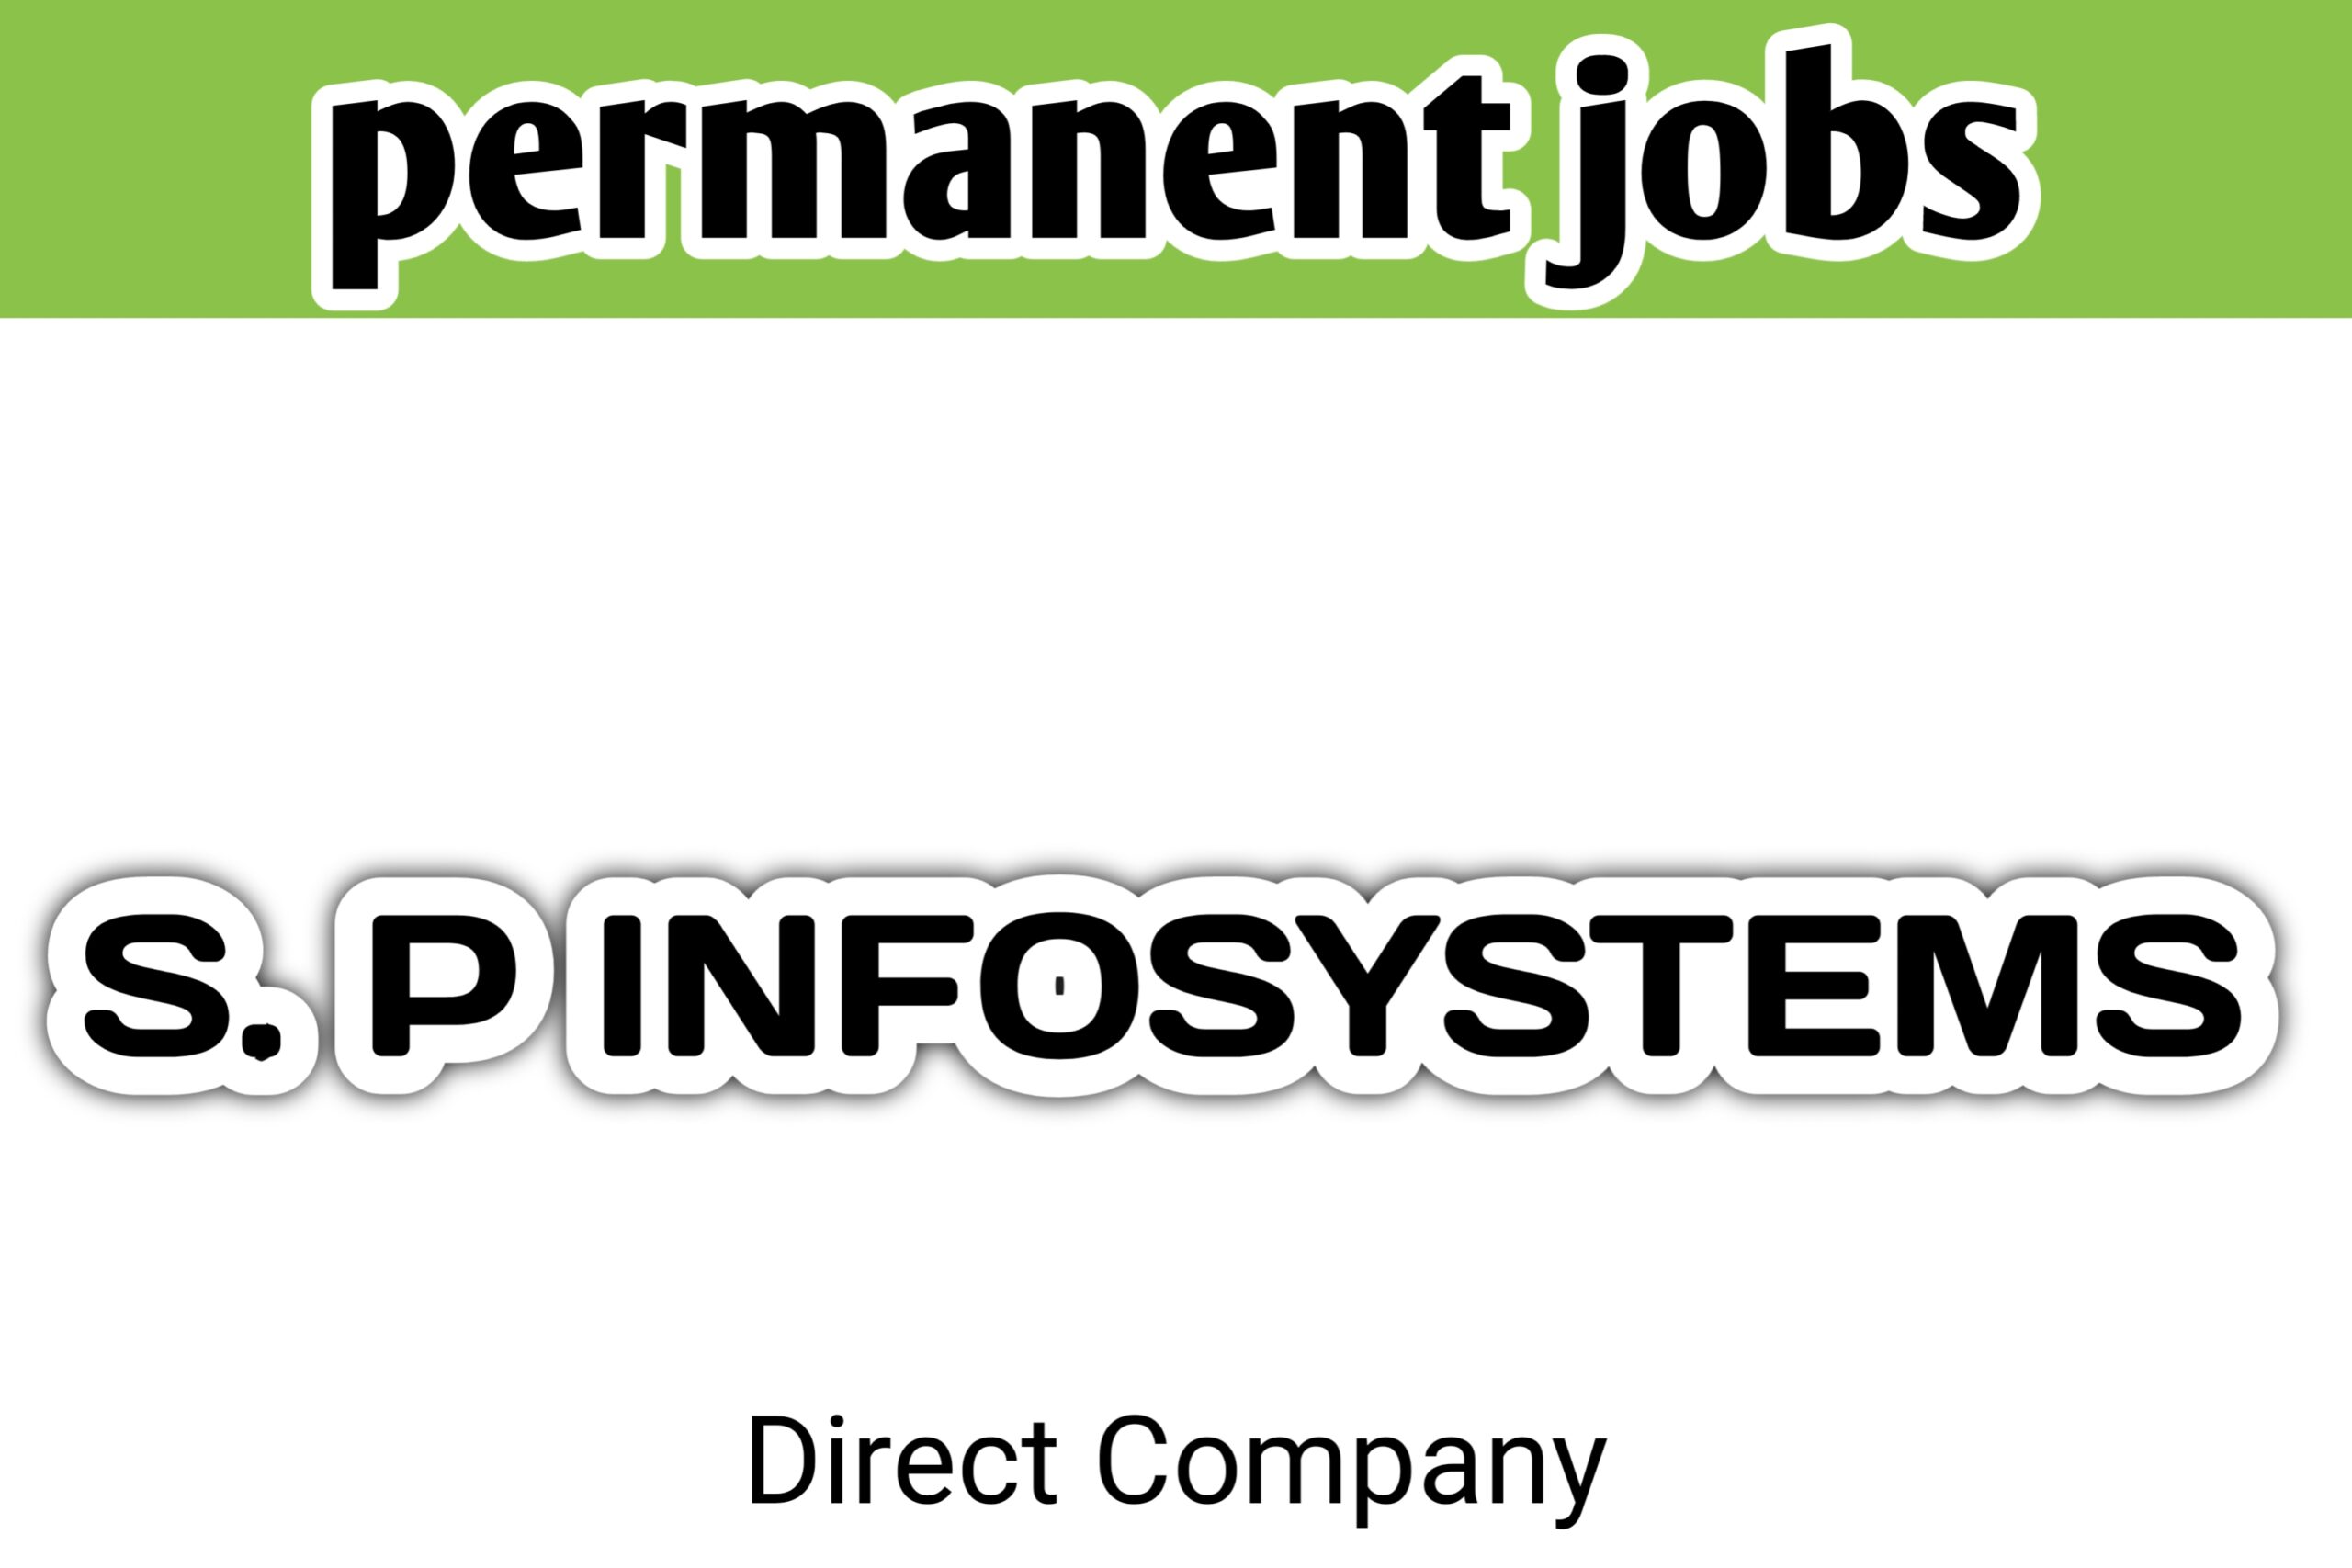 Direct company job requirements in virudhunagar